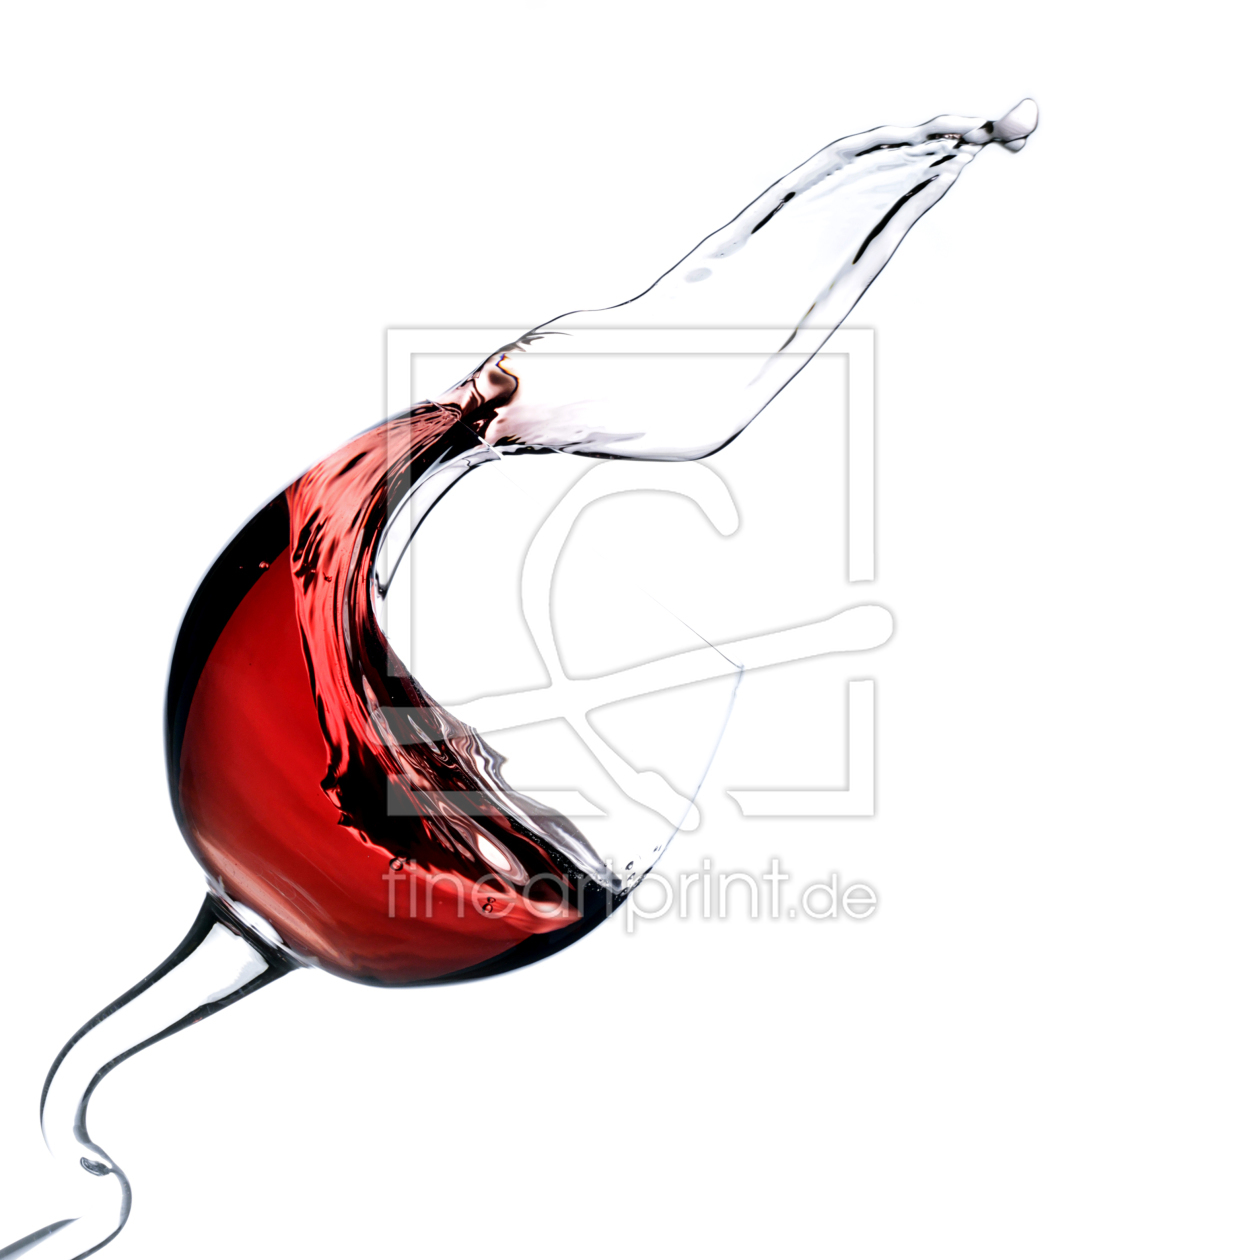 Bild-Nr.: 10686506 Red wine erstellt von Andreas Berheide